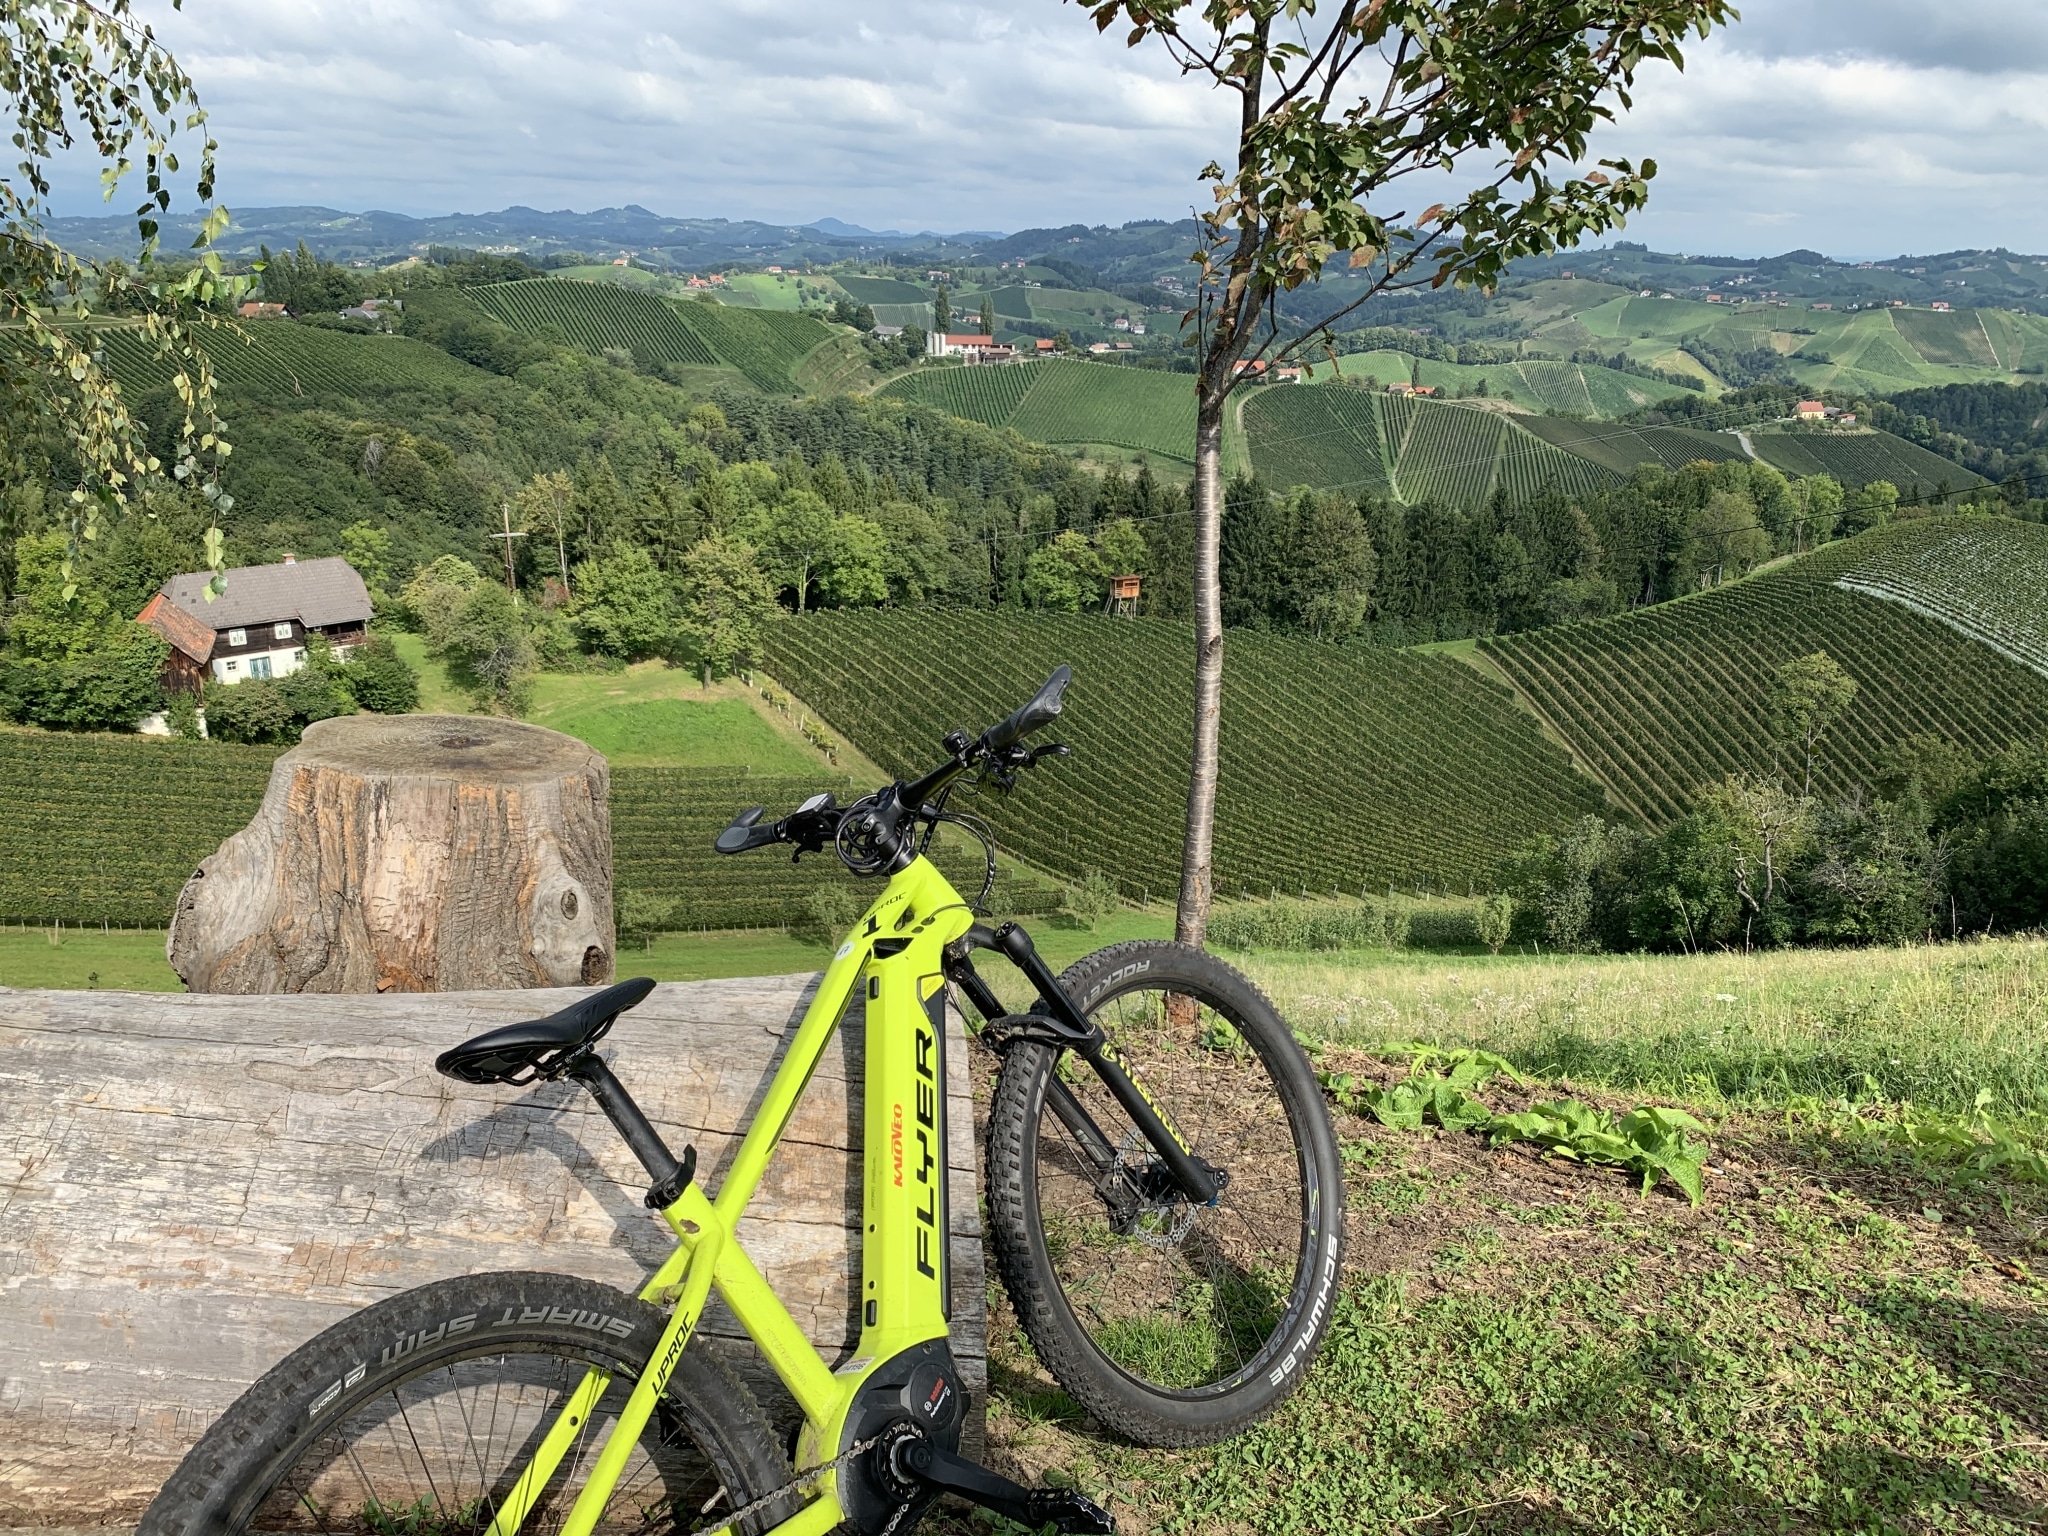 Farbenfrohes E-Bike lehnt an Baumstamm, im Hintergrund sind die Weinberge zu sehen